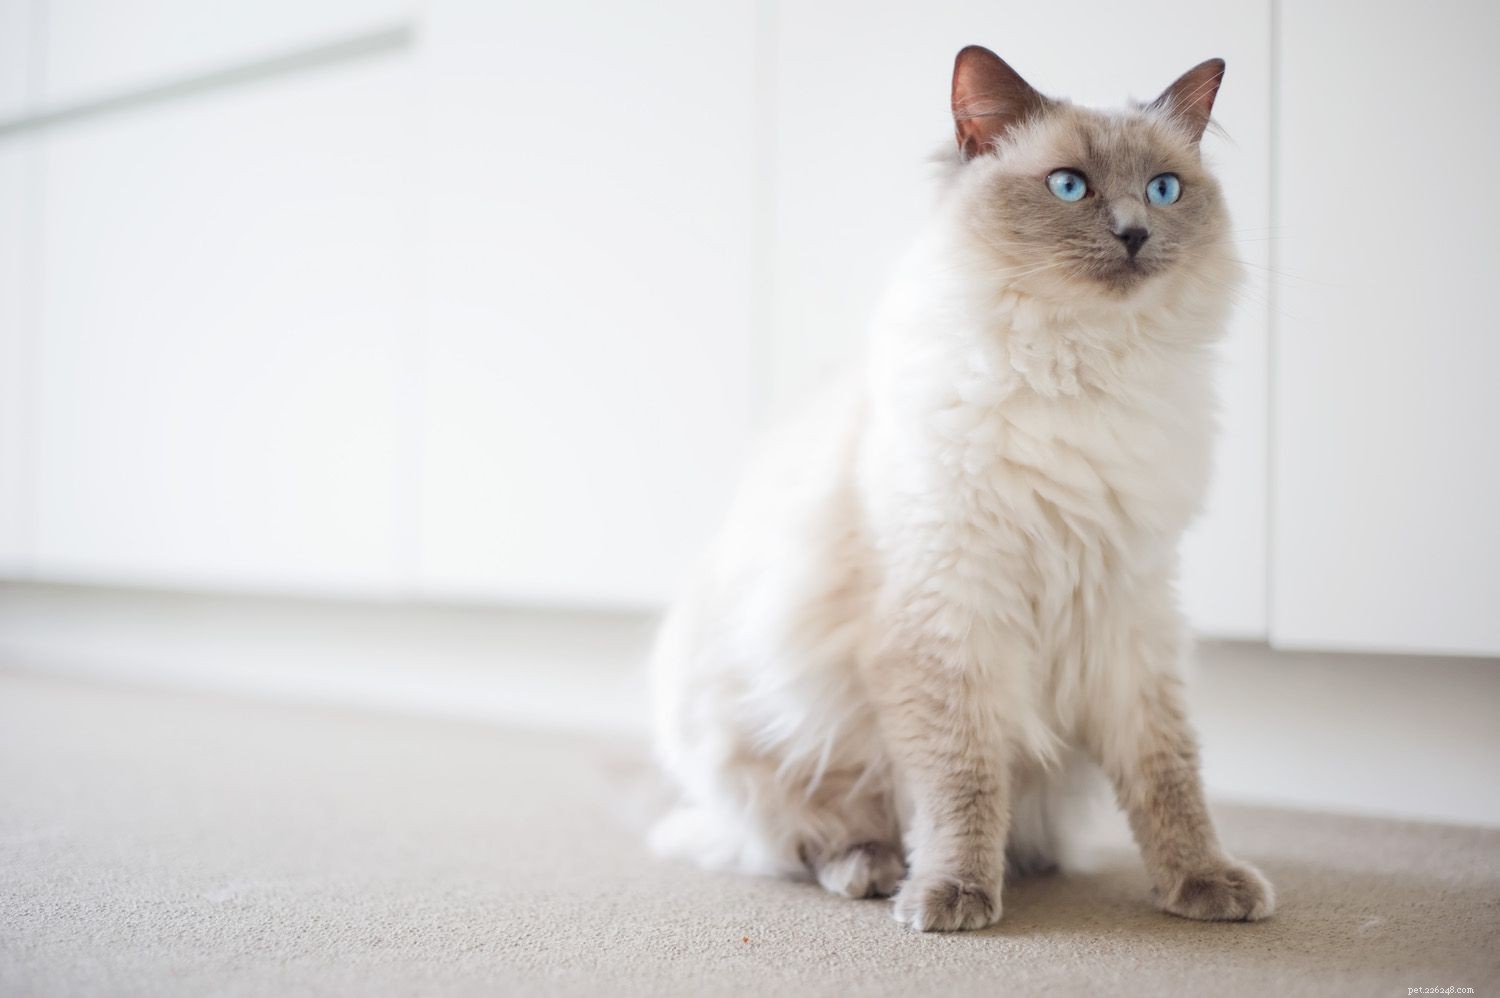 아파트 생활을 위한 10가지 최고의 고양이 품종